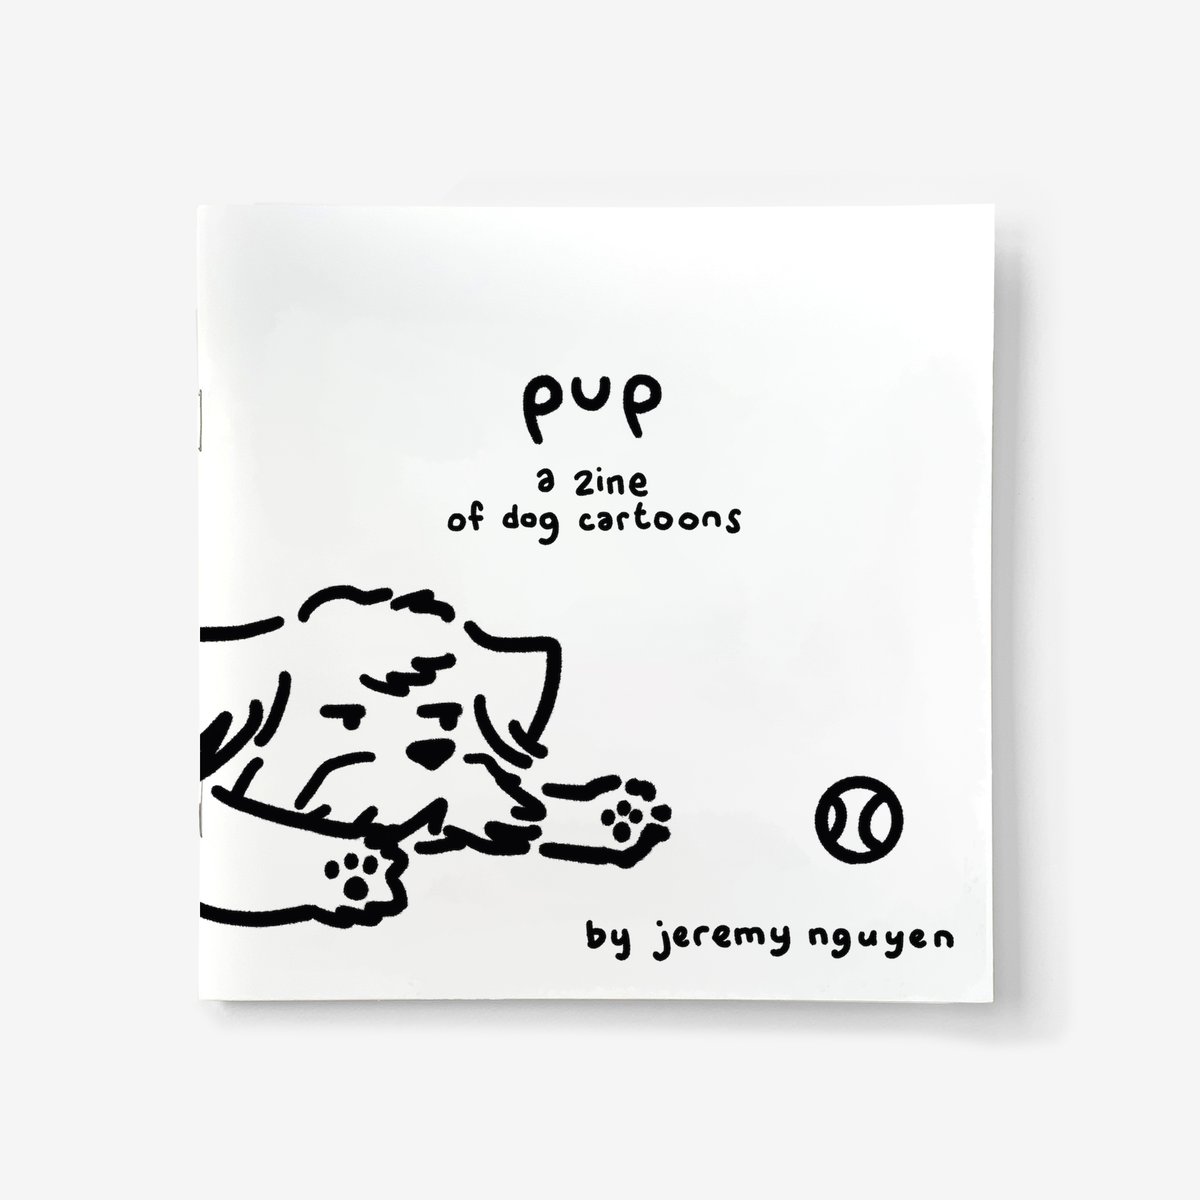 Image of pup - a zine of dog cartoons